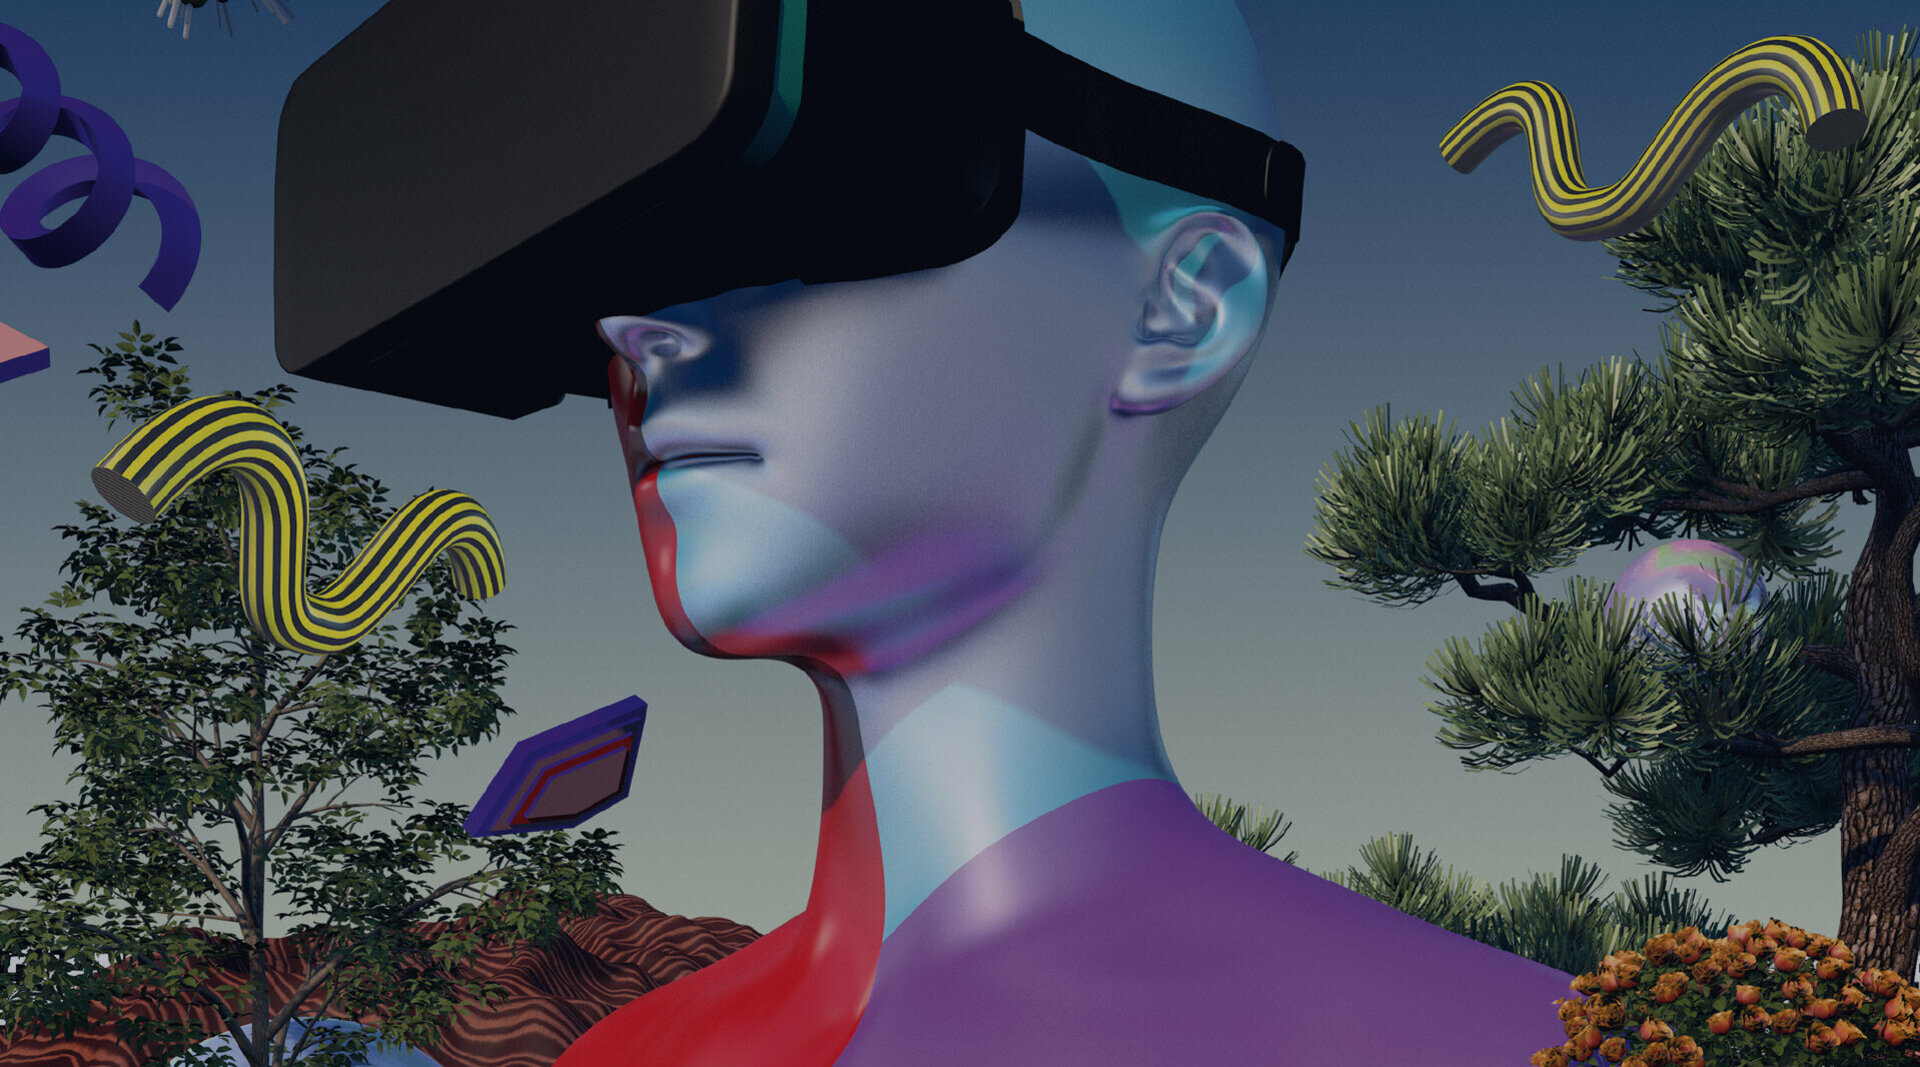 Man sieht das futuristische Titelbild des Verändernmagazins: Eine Person hat eine VR-Brille aufgesetzt